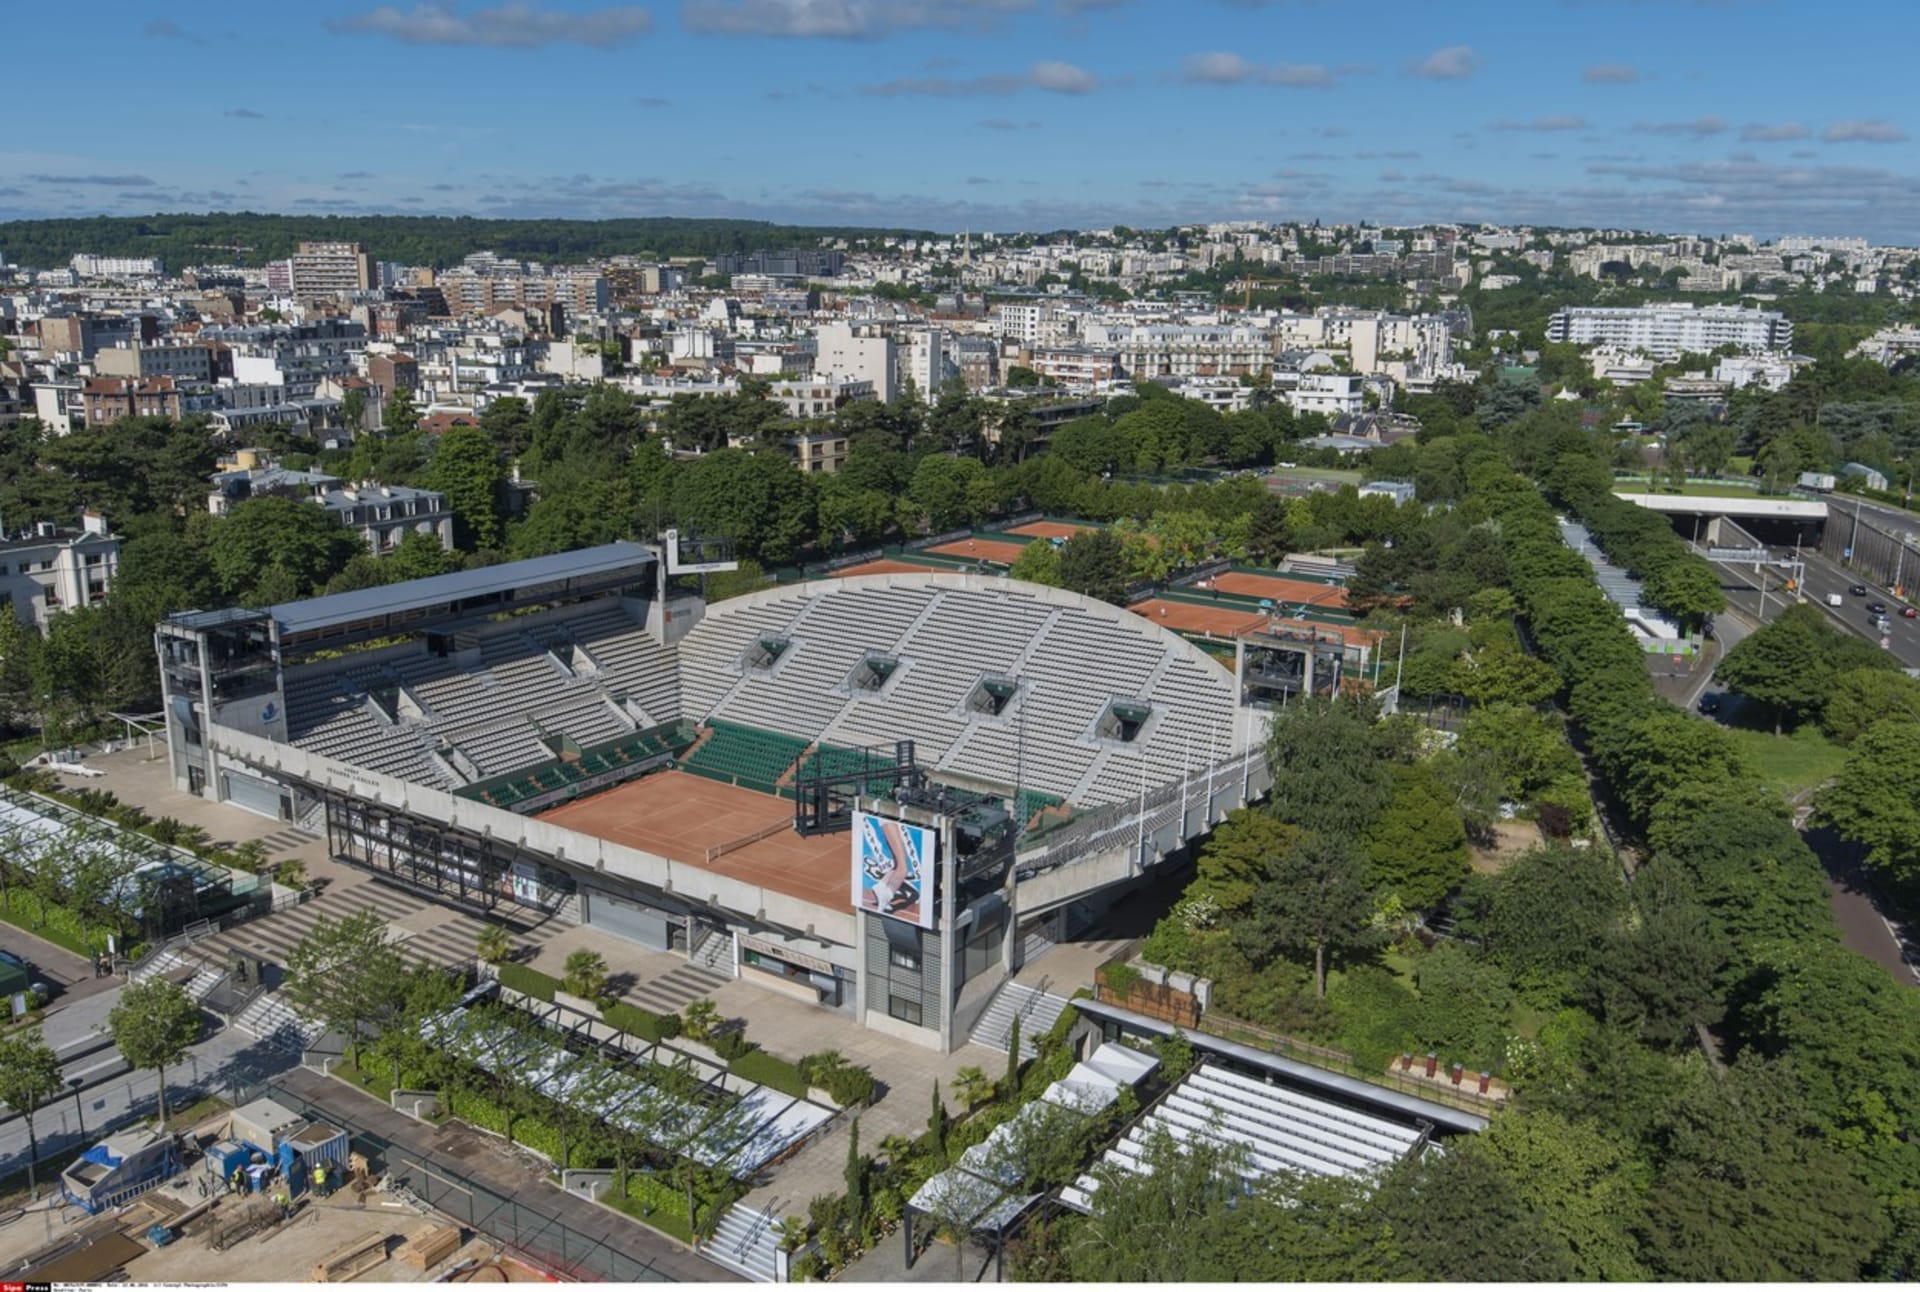 Tenisové soutěže bude na LOH 2024 hostit areál Roland-Garros. 